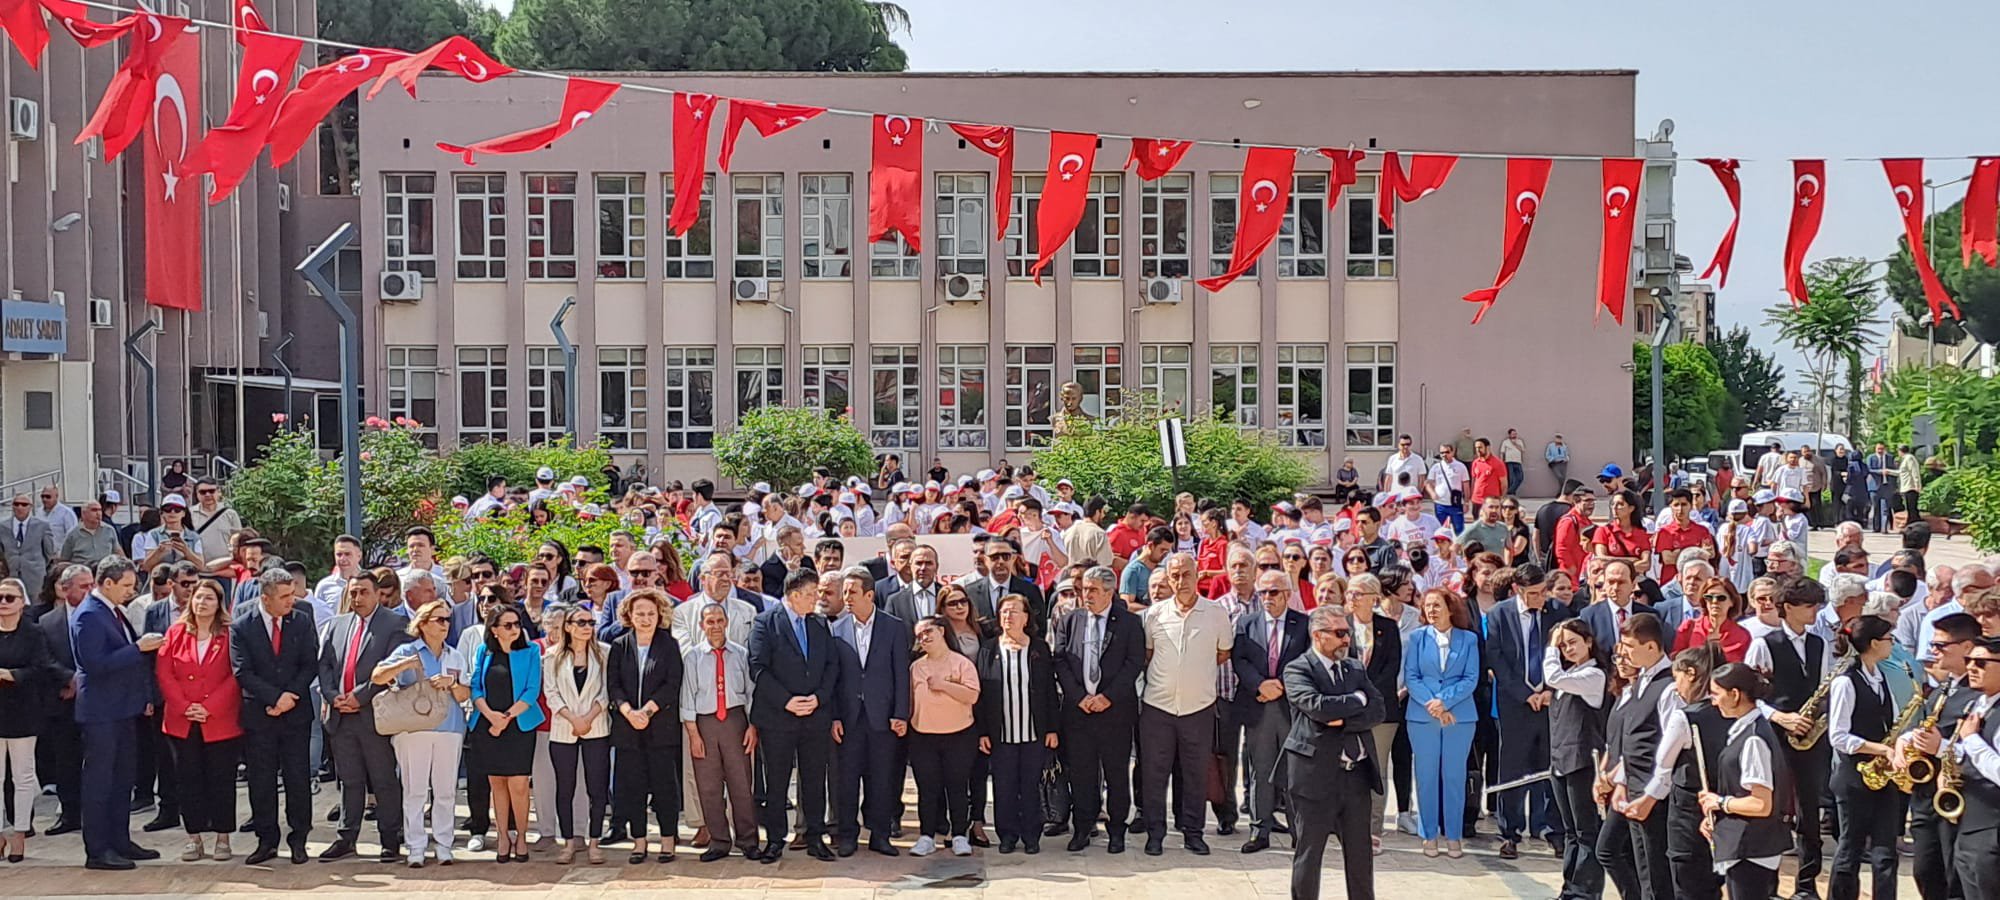 19 Mayıs Atatürk'ü Anma, Gençlik ve Spor Bayramı kapsamında Aydın Valiliği önünde düzenlenen kutlama törenine Odamız Meclis Başkan Yardımcısı Semih ÇAKIR katılım sağladı.